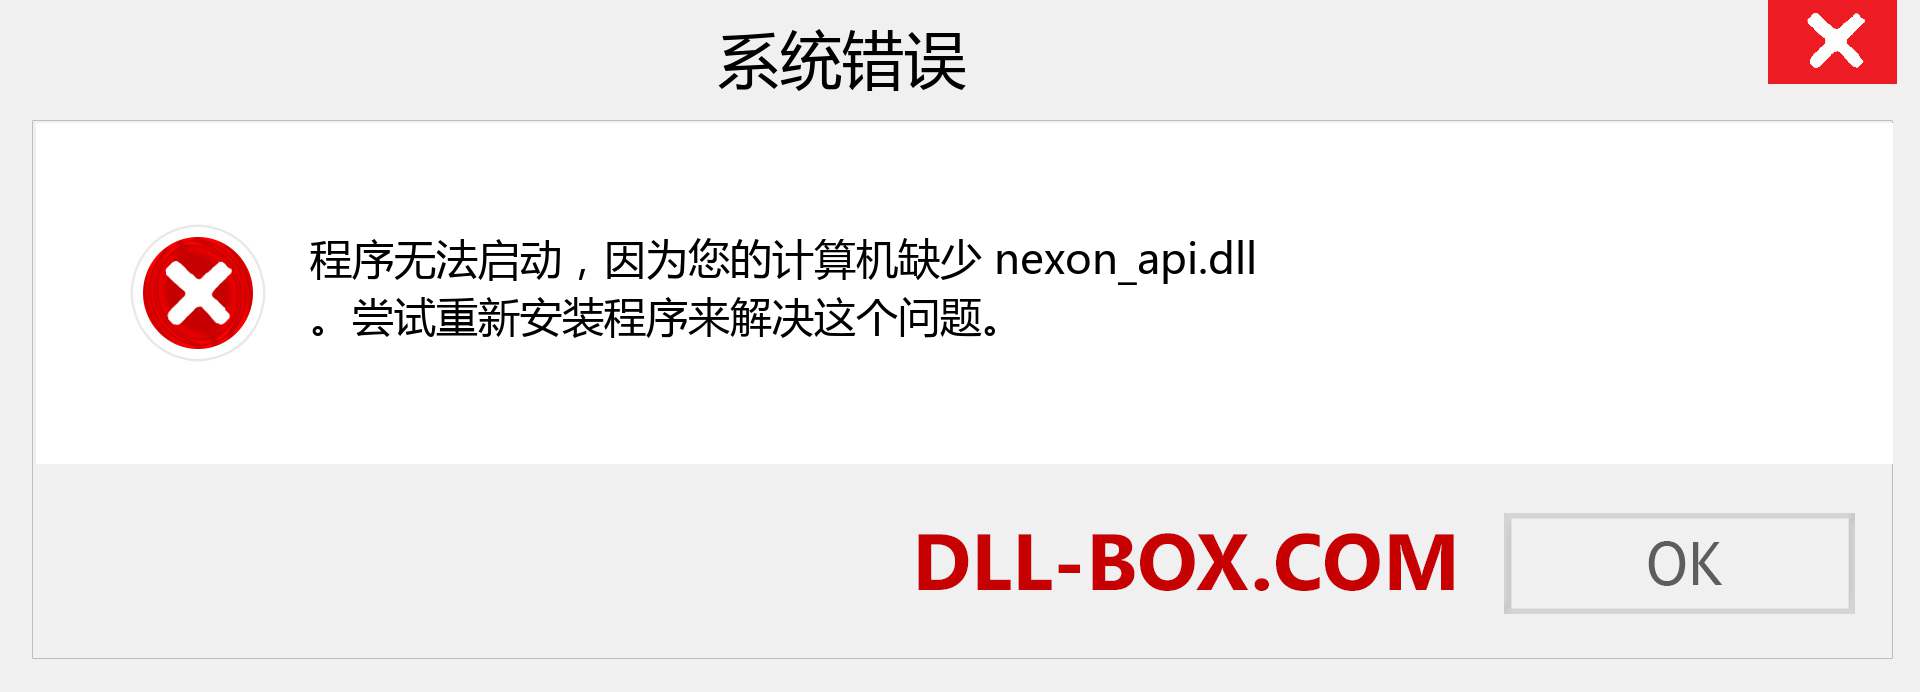 nexon_api.dll 文件丢失？。 适用于 Windows 7、8、10 的下载 - 修复 Windows、照片、图像上的 nexon_api dll 丢失错误